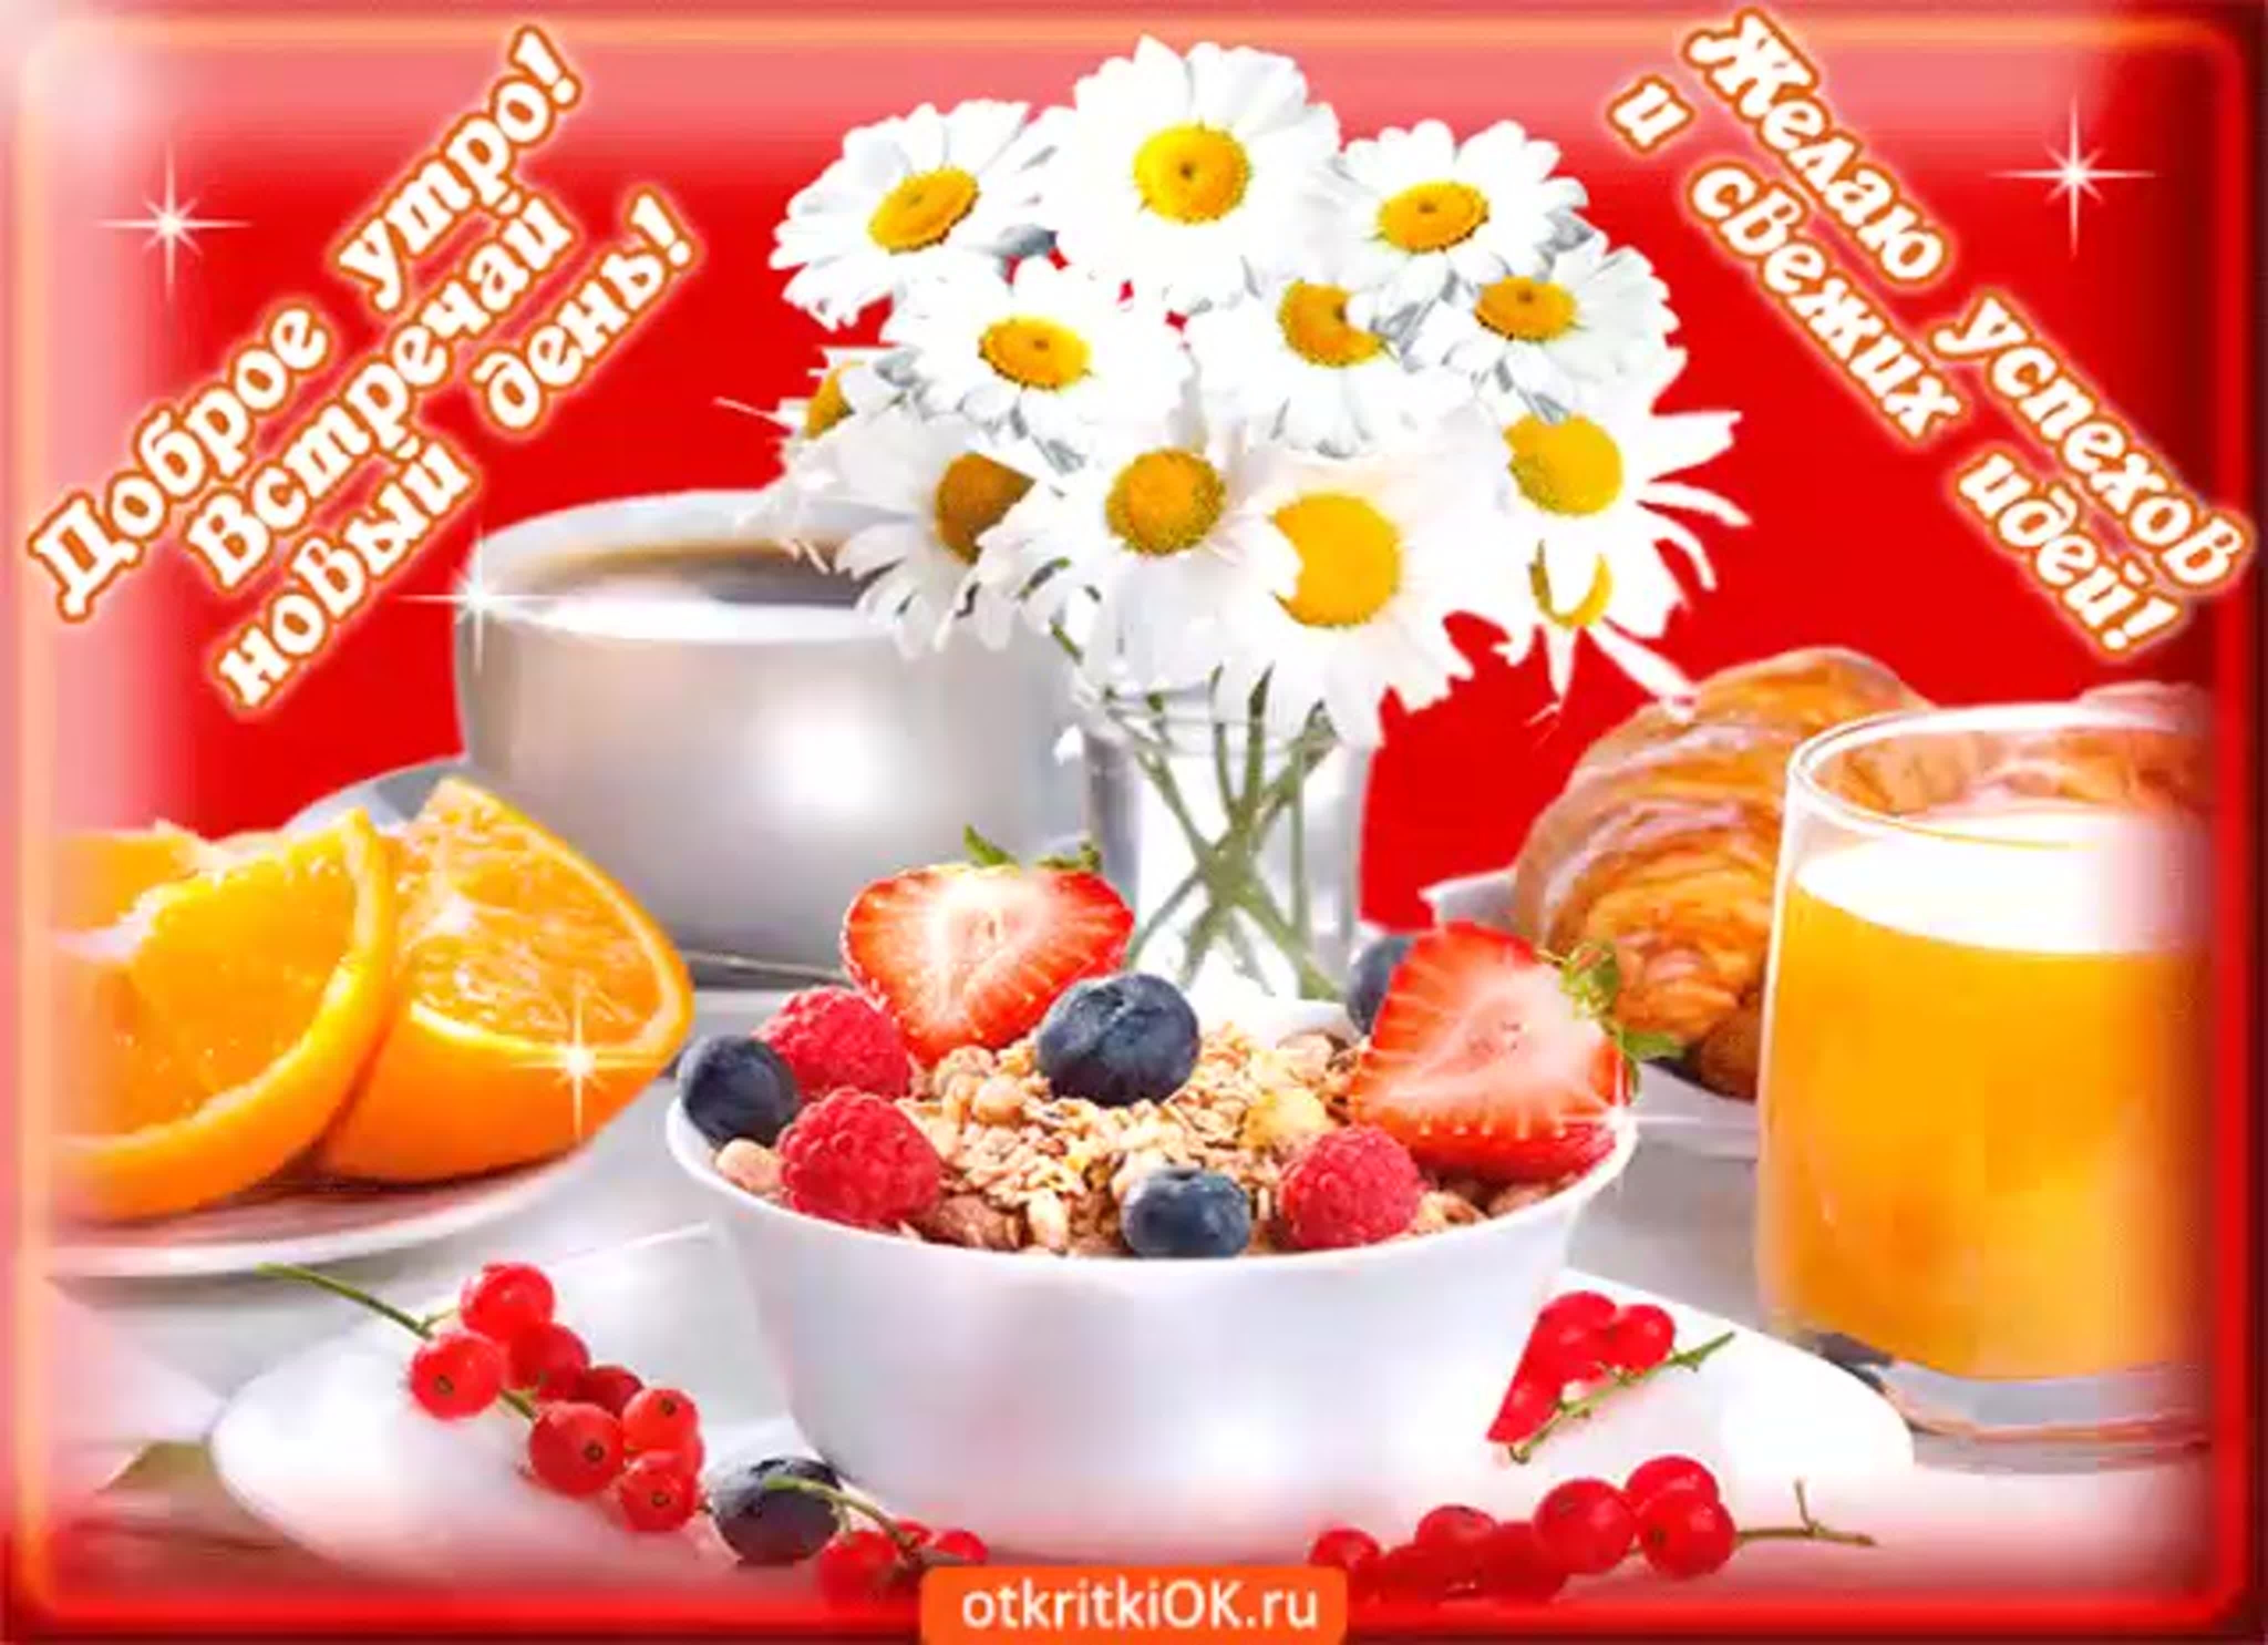 Доброе утро апреля пожелания здоровья. Доброго дня и отличного здоровья. Прекрасного утра и хорошего дня. Здорового утра и хорошего настроения. Доброе утро с пожеланиями здоровья.